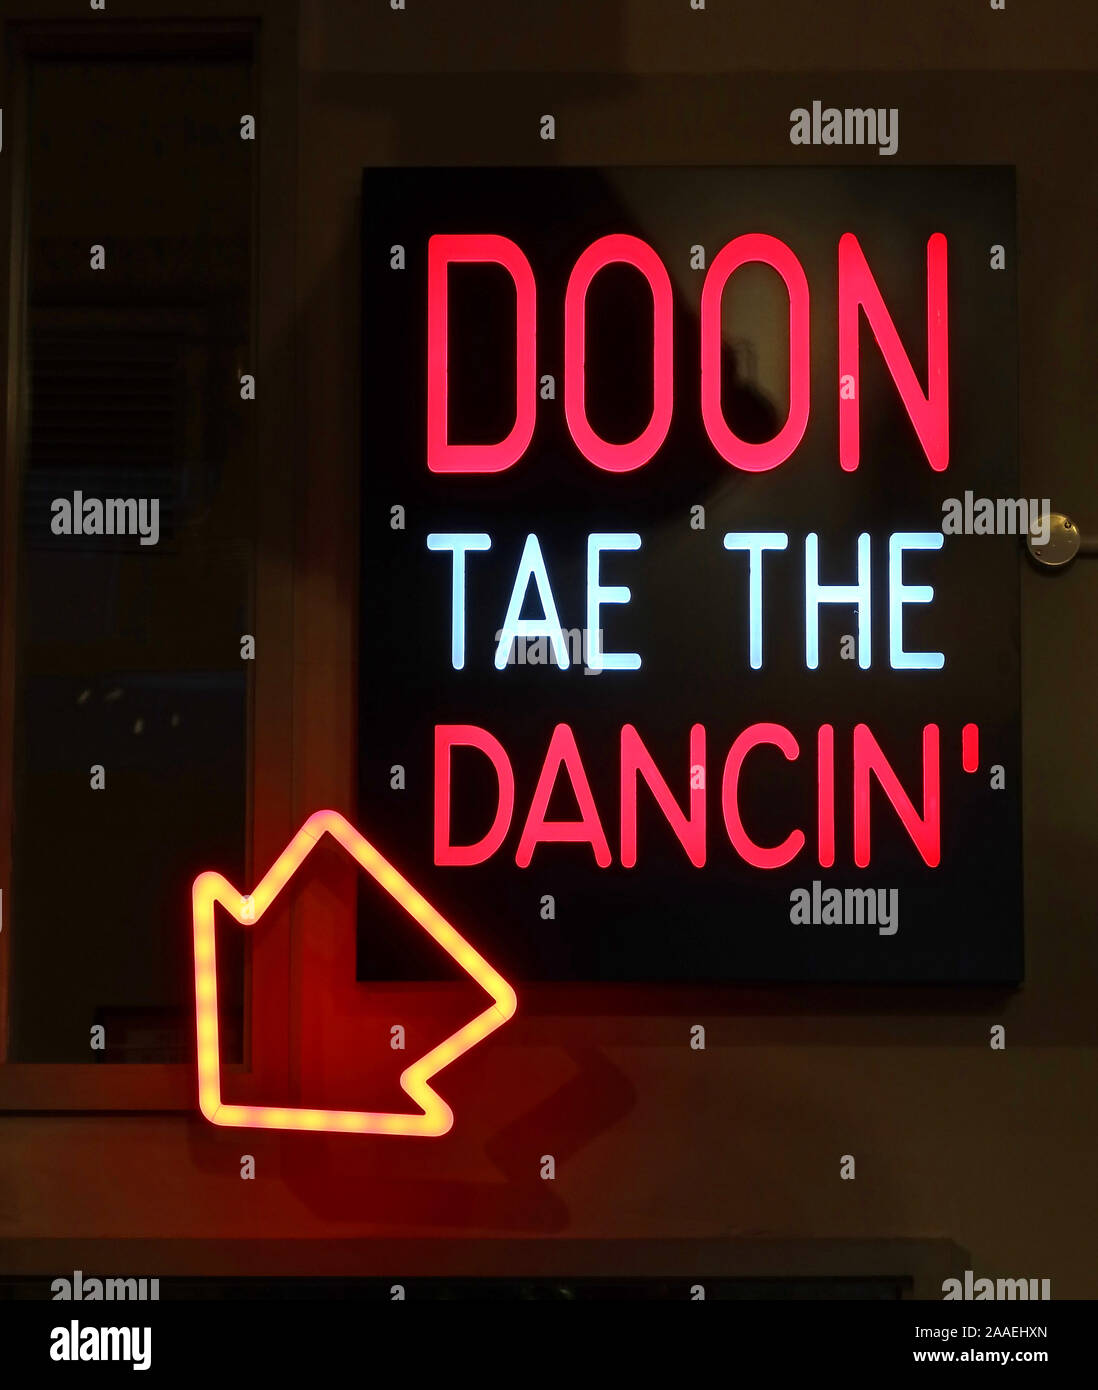 Doon Tae das tanzende Neonschild - Down to the Dancing - Pub, Bar, Club-Schild - Schottische Poesie Stockfoto